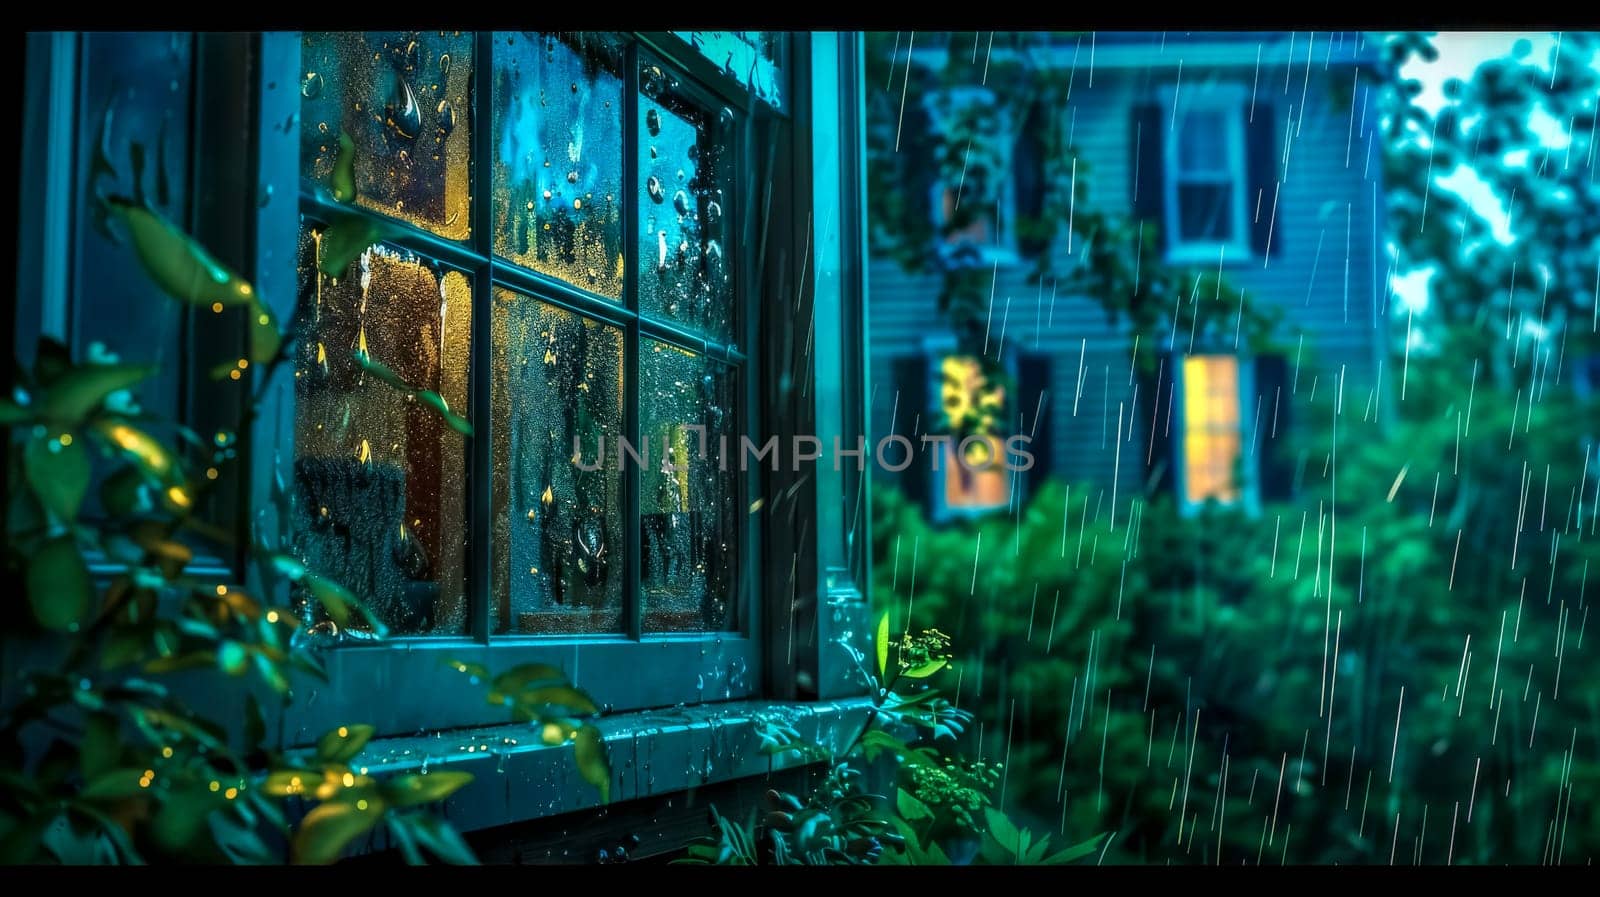 Cozy rainy evening by a window by Edophoto